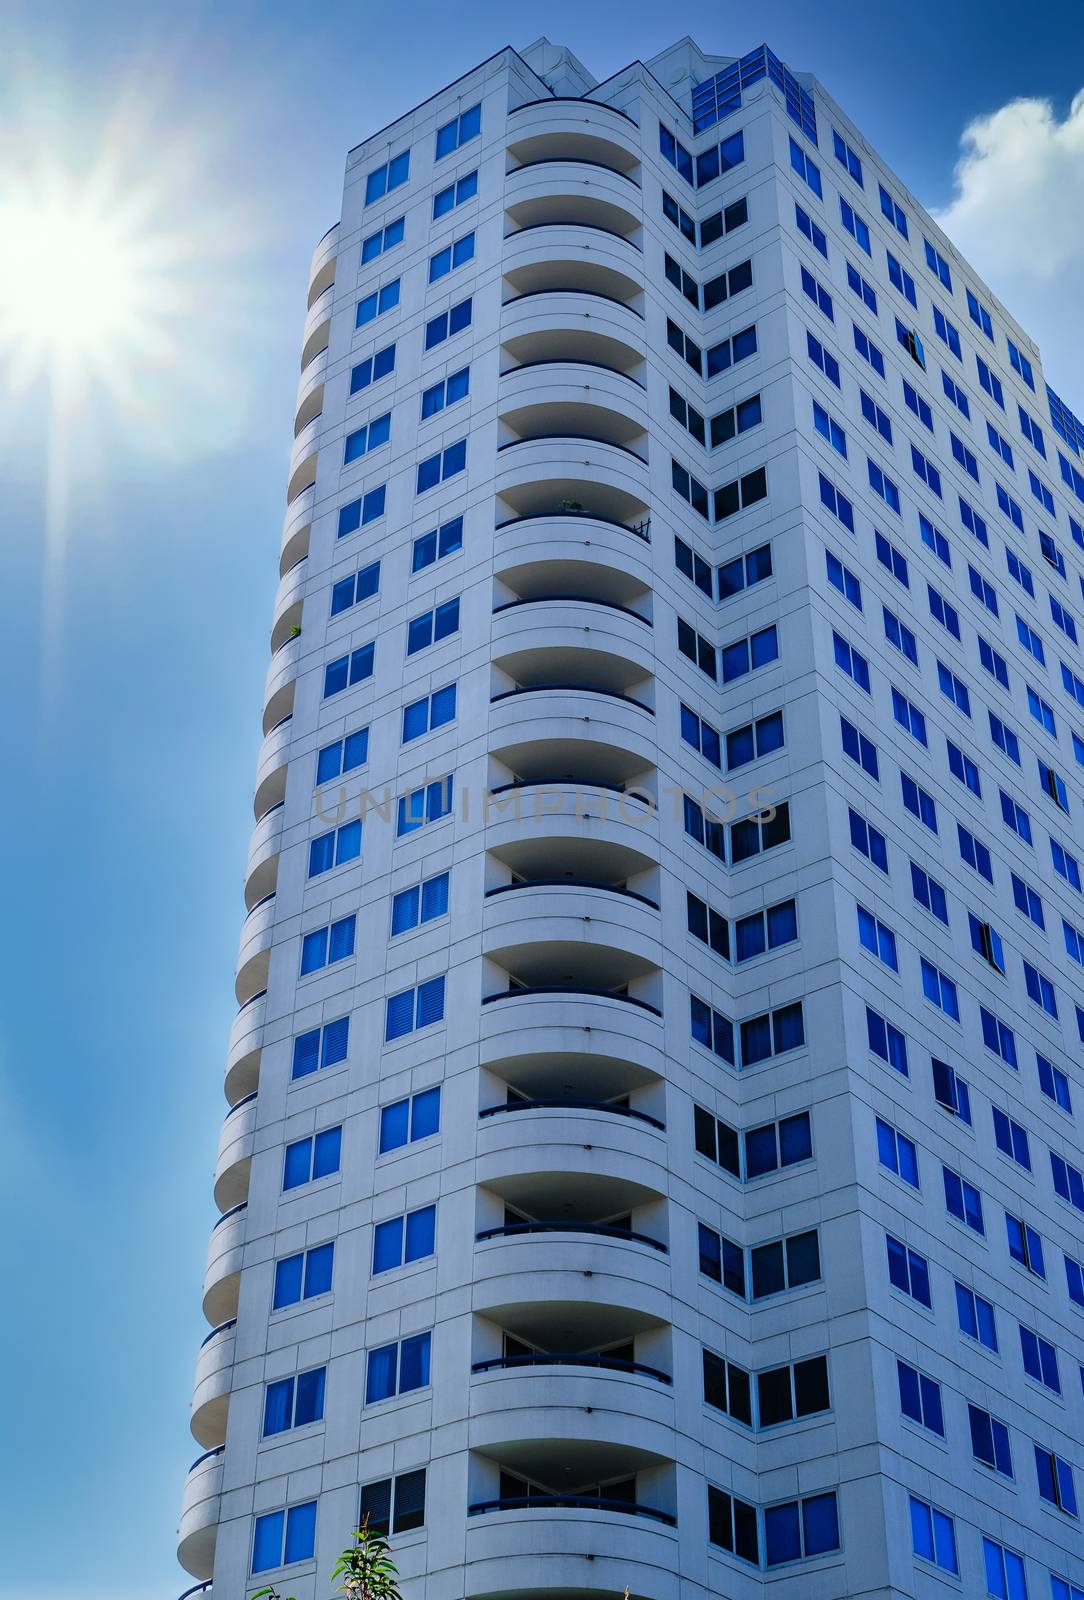 White Condo Tower in Sunny Sky